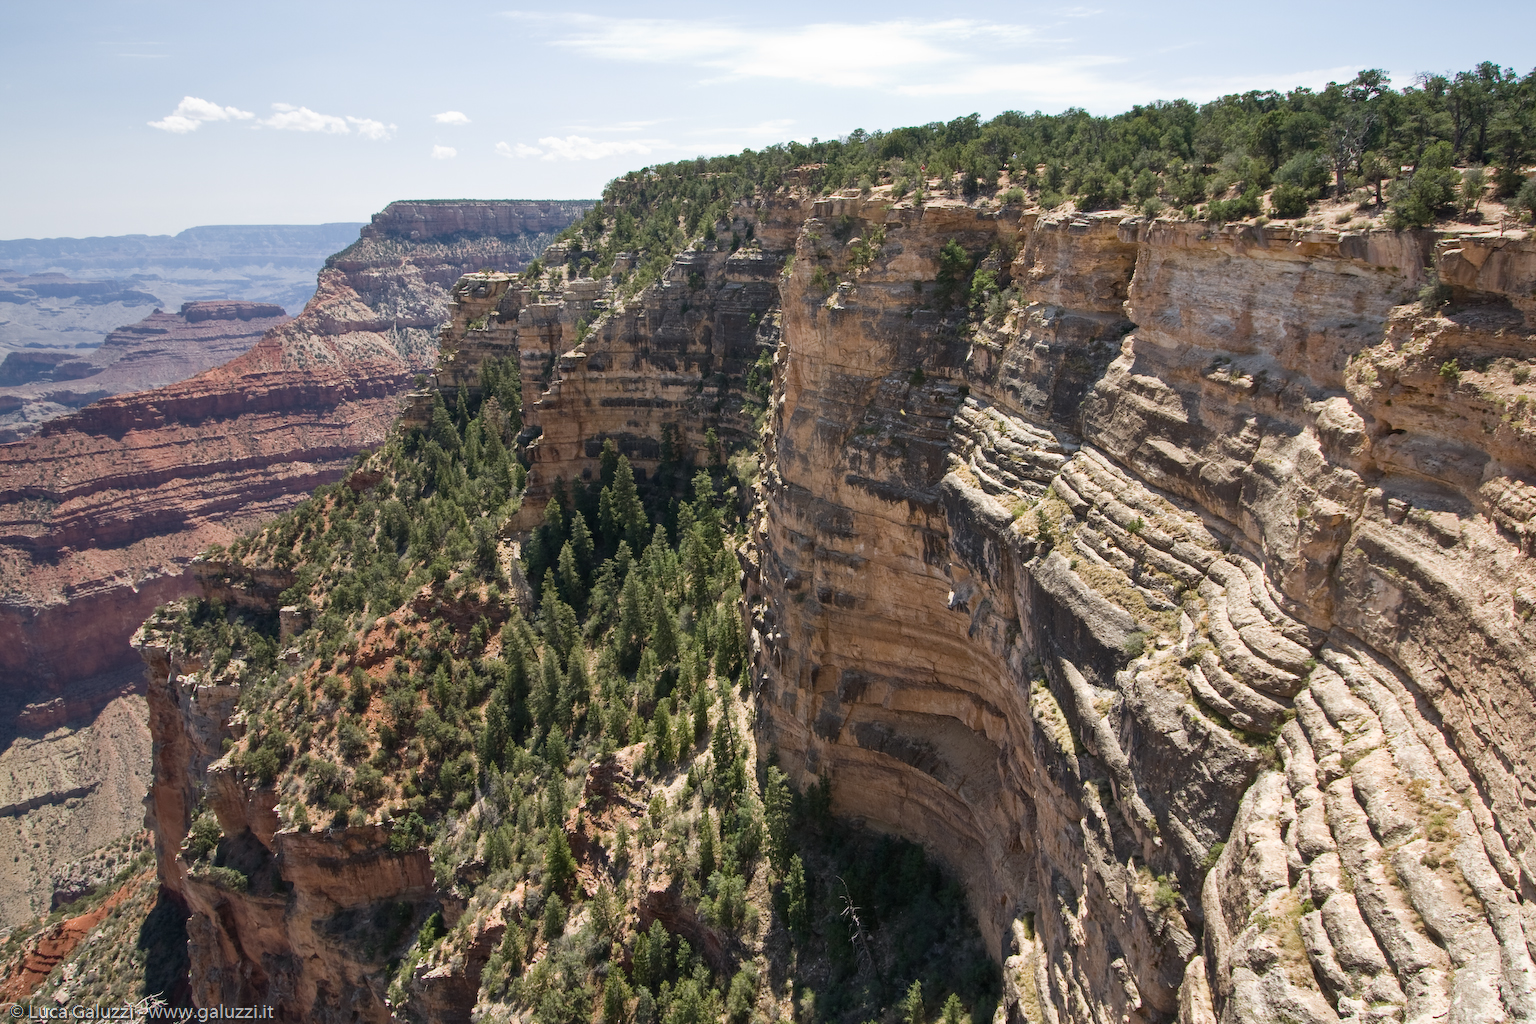 Il Grand Canyon è un´immensa gola creata dal fiume Colorado nell´Arizona settentrionale. È lungo 446 chilometri circa, profondo fino a 1.600 metri e con una larghezza variabile dai 500 metri ai 27 chilometri